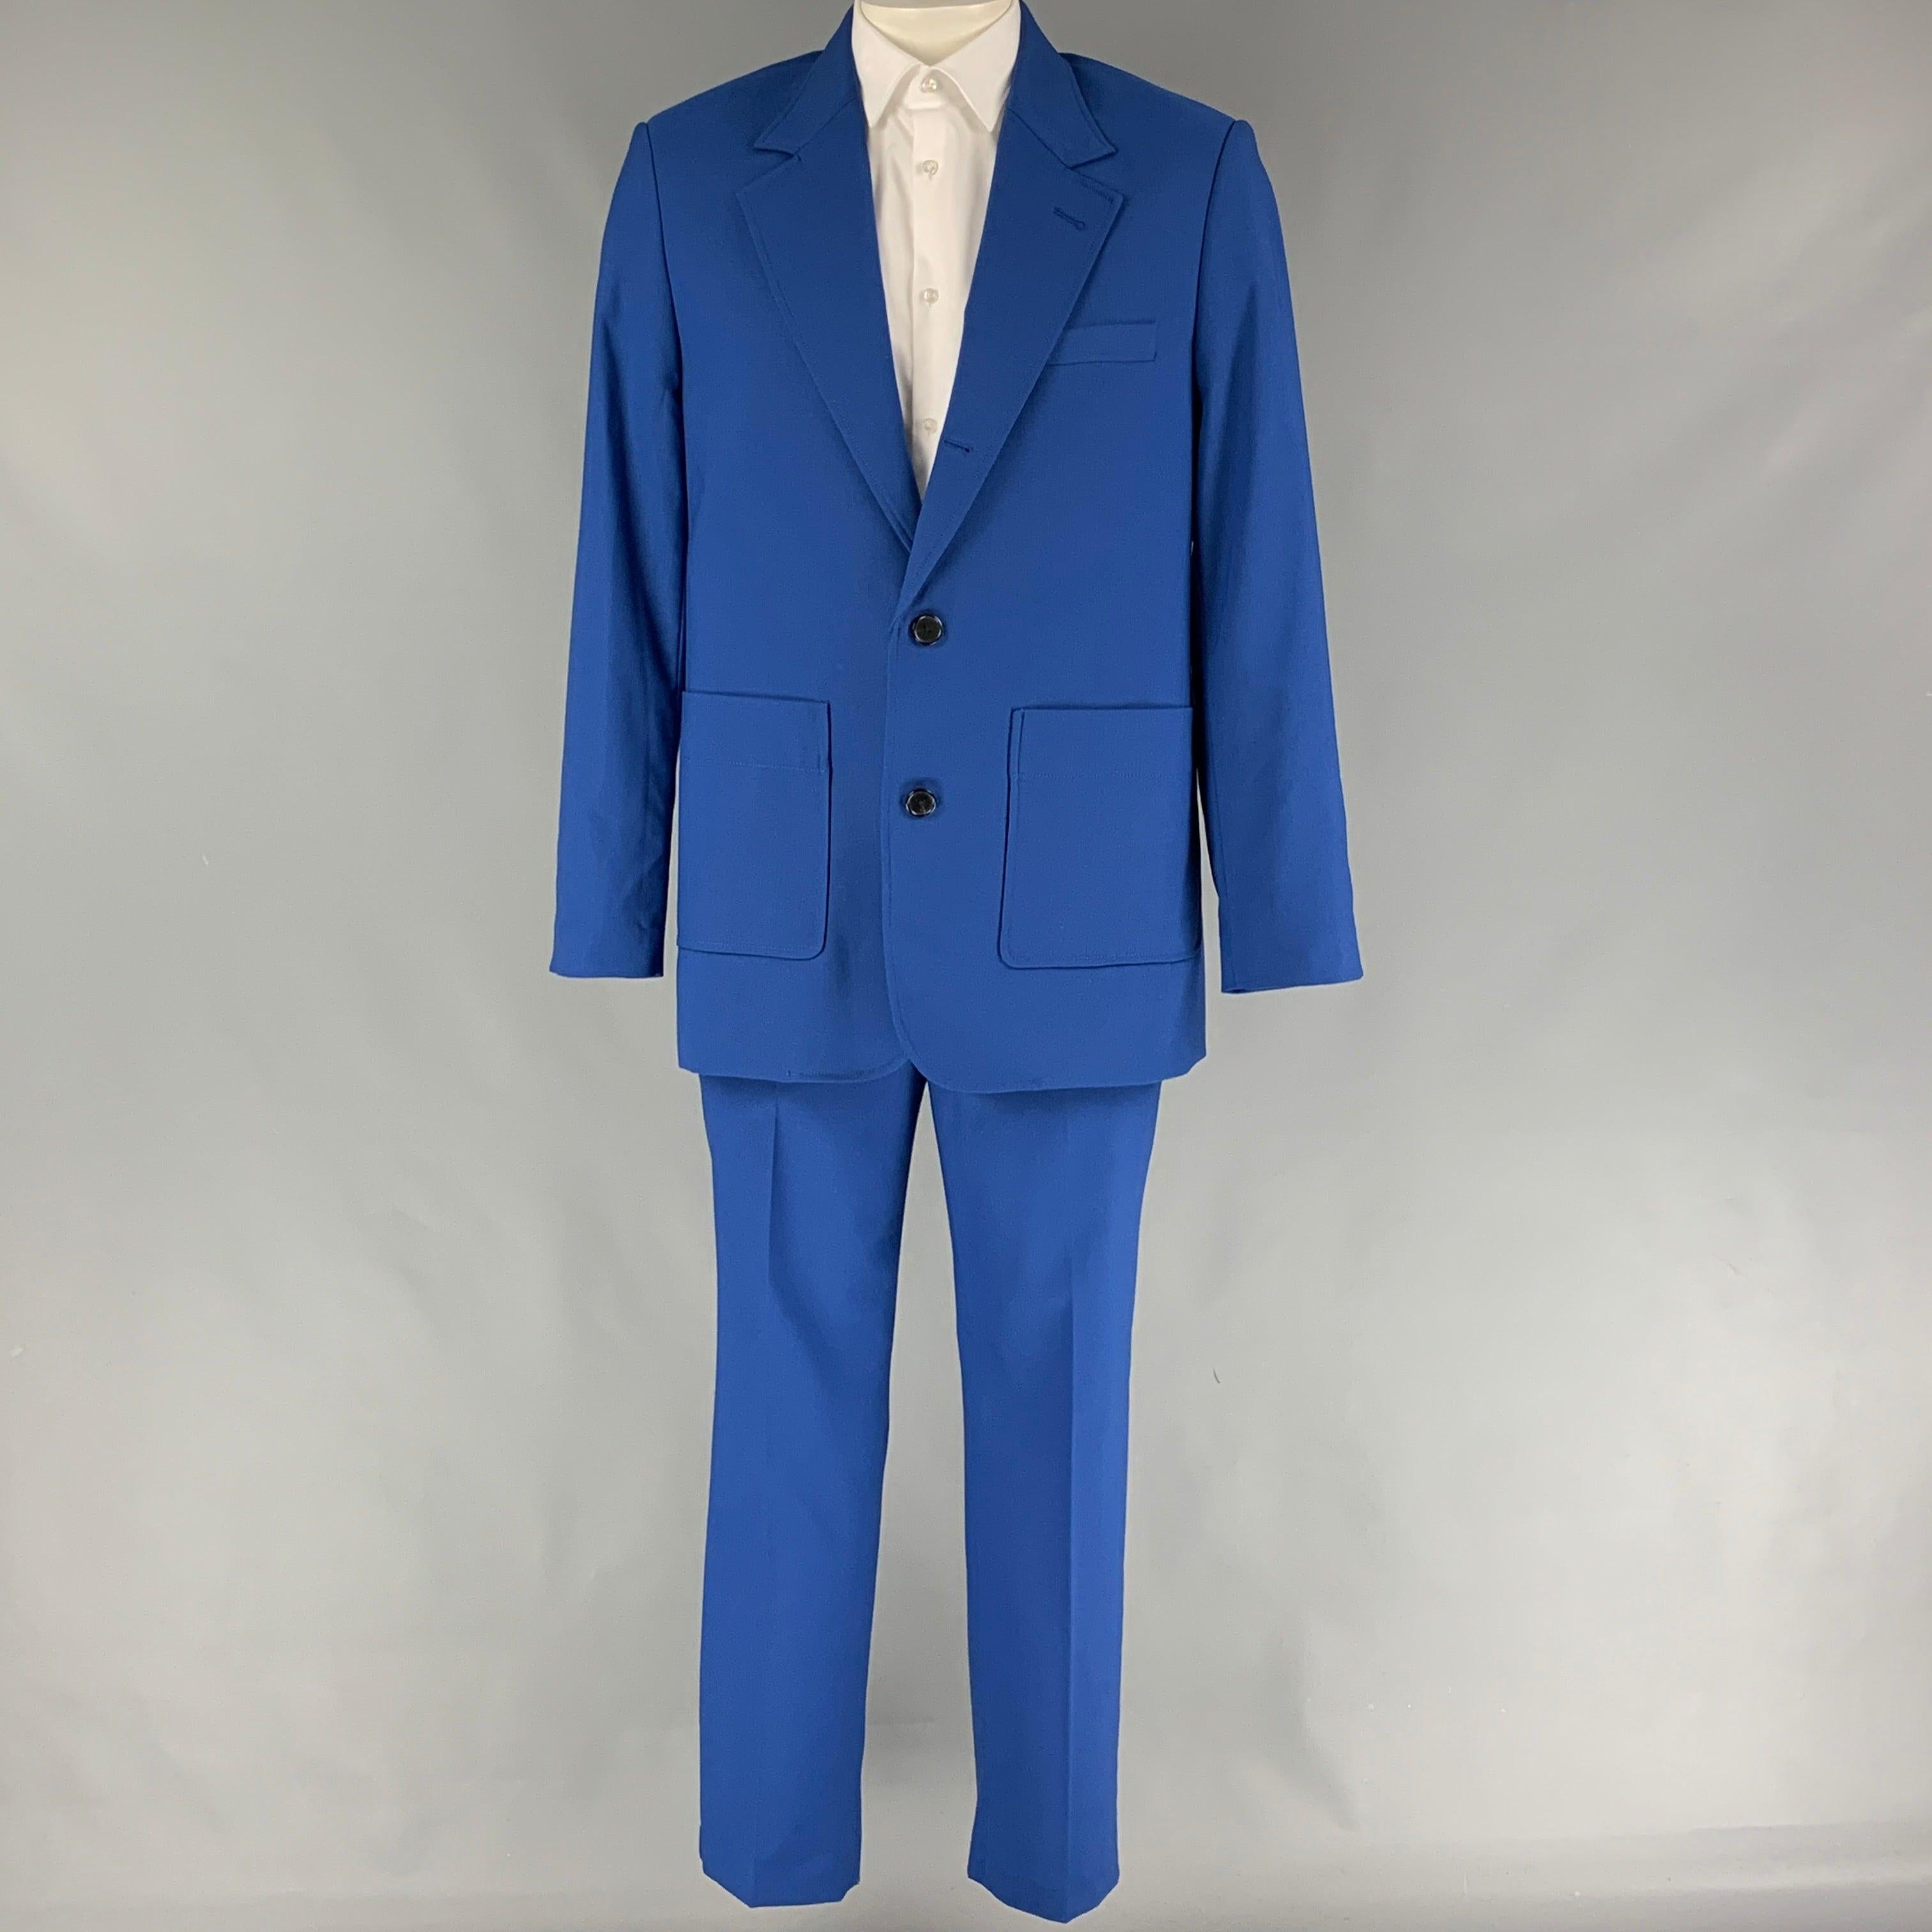 3.1 PHILLIP LIM
Le costume est en laine mélangée bleu roi et comprend un manteau de sport à trois boutons, à revers échancré, et un pantalon assorti à devant plat. Livré avec les étiquettes. Très bon état d'origine.  

Marqué :   40 

Mesures : 
 